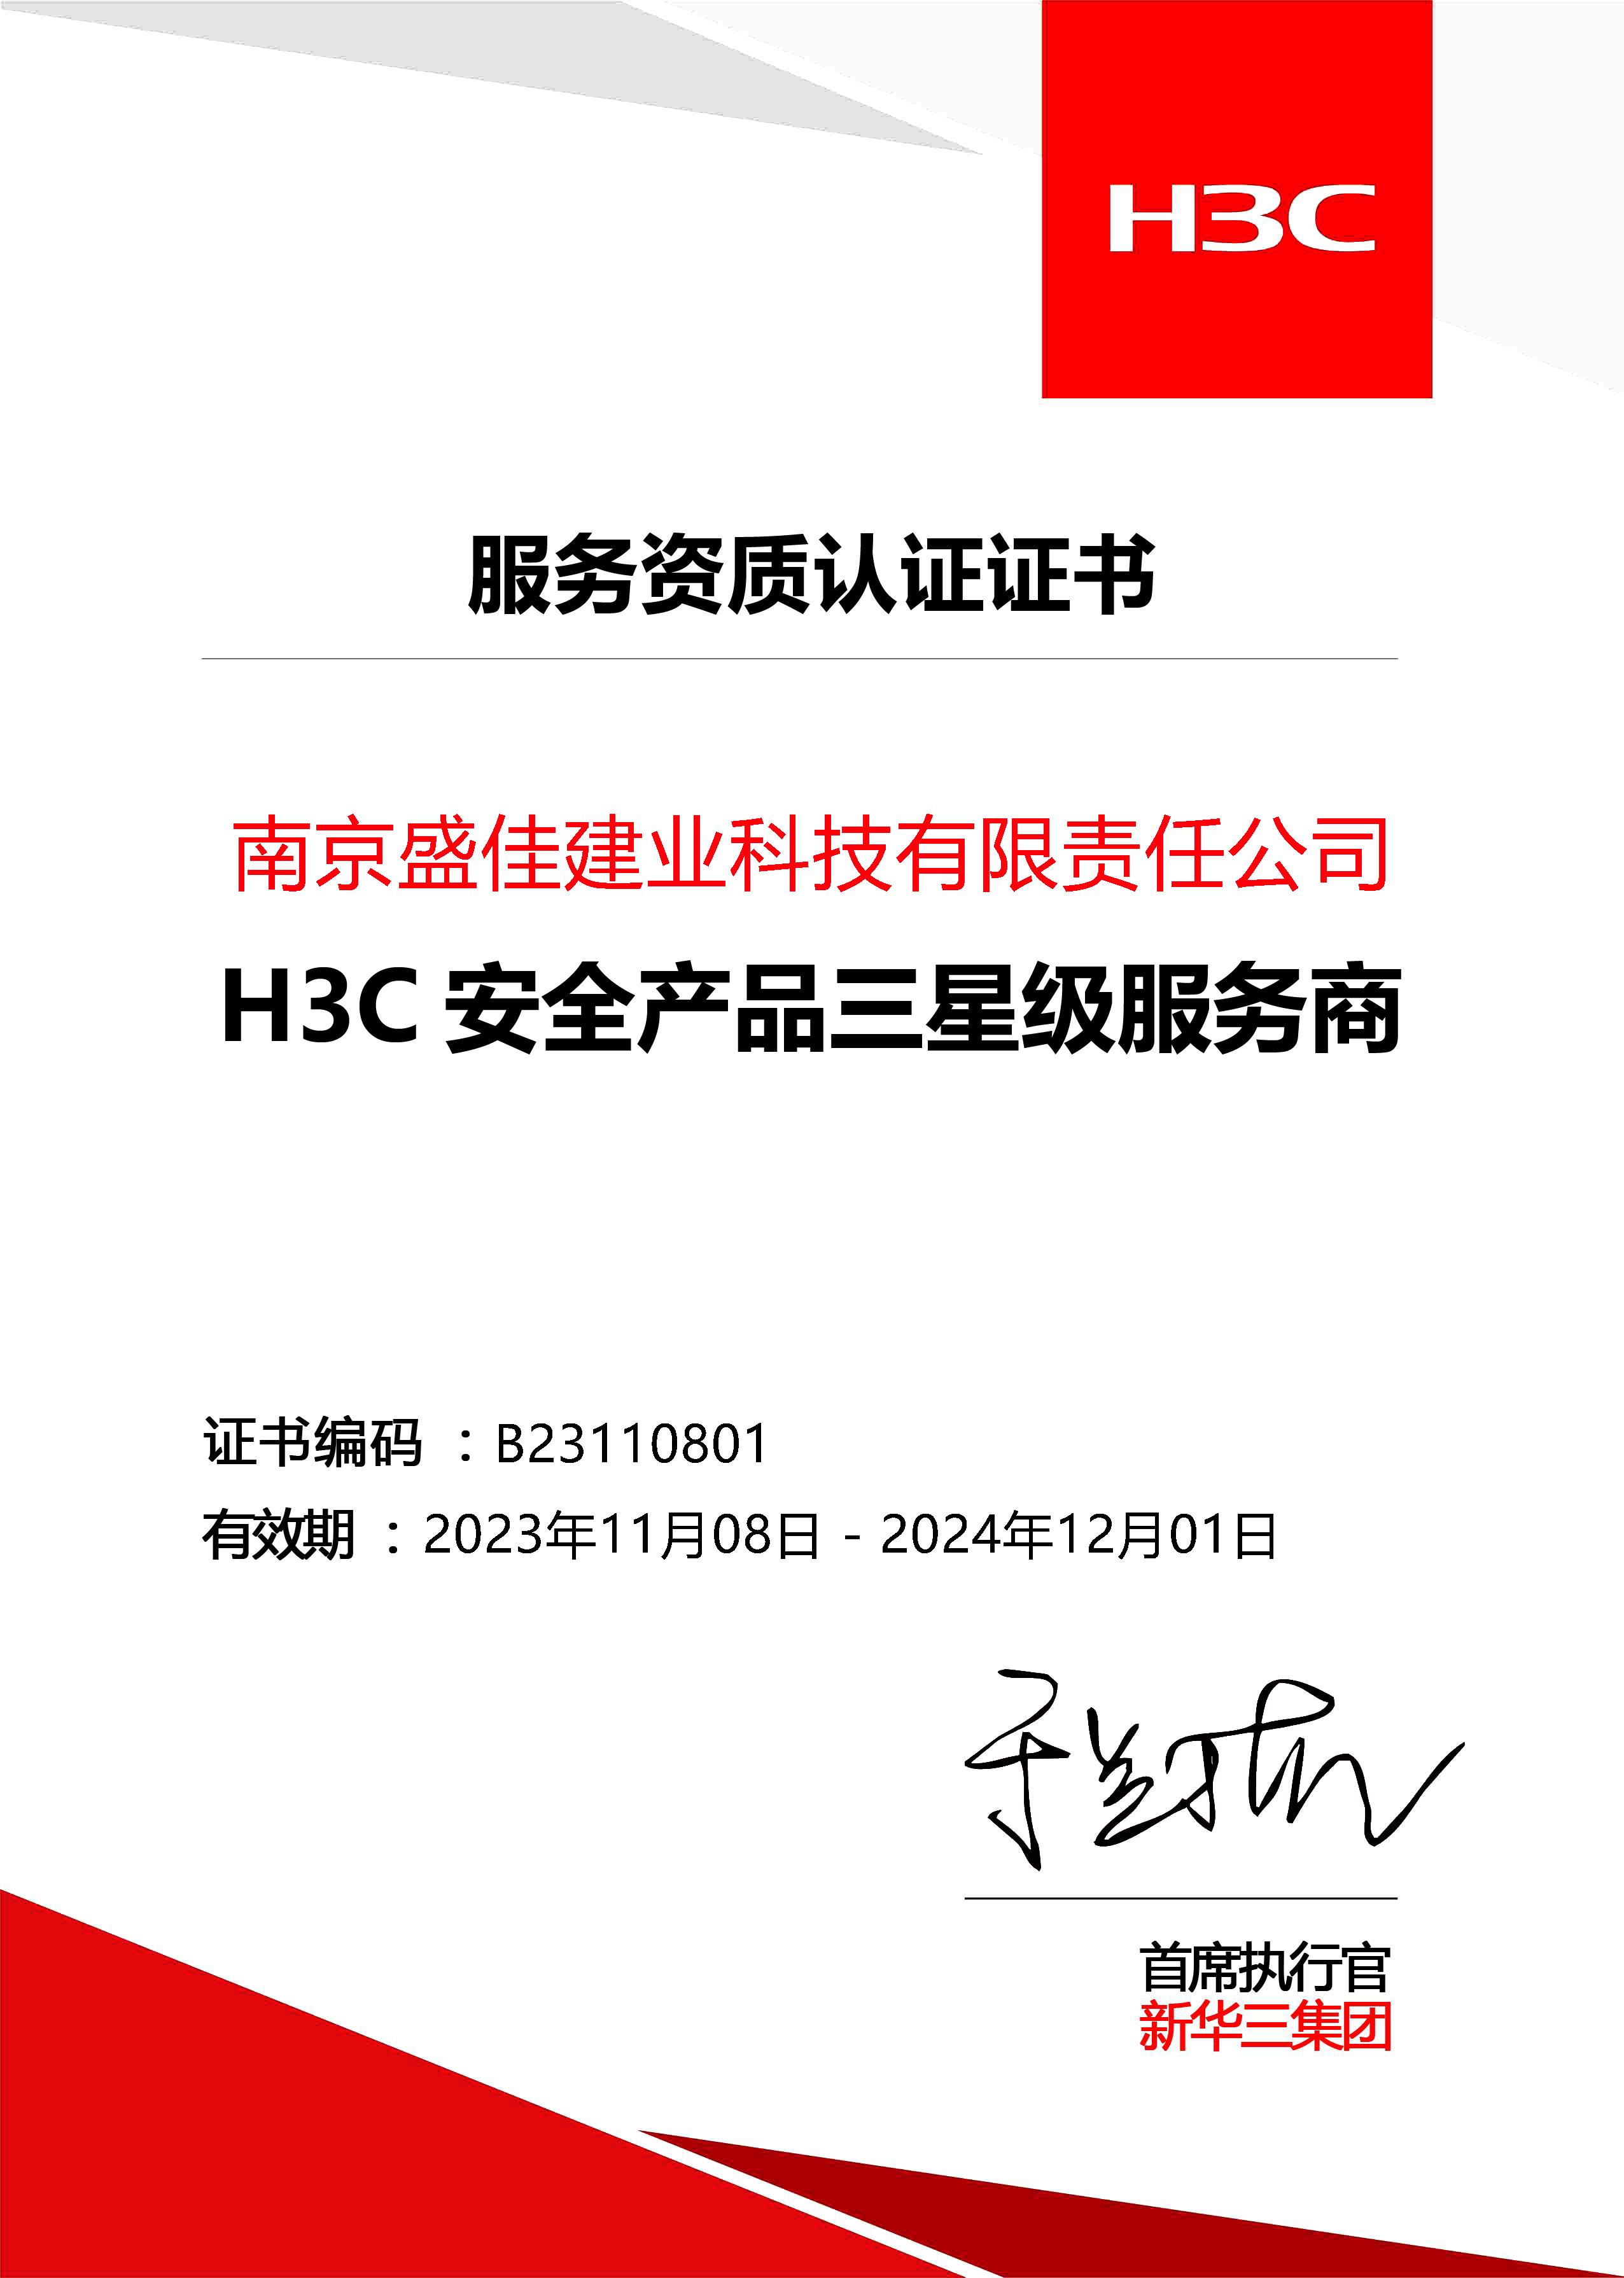 盛佳-H3C安全产品三星级服务商